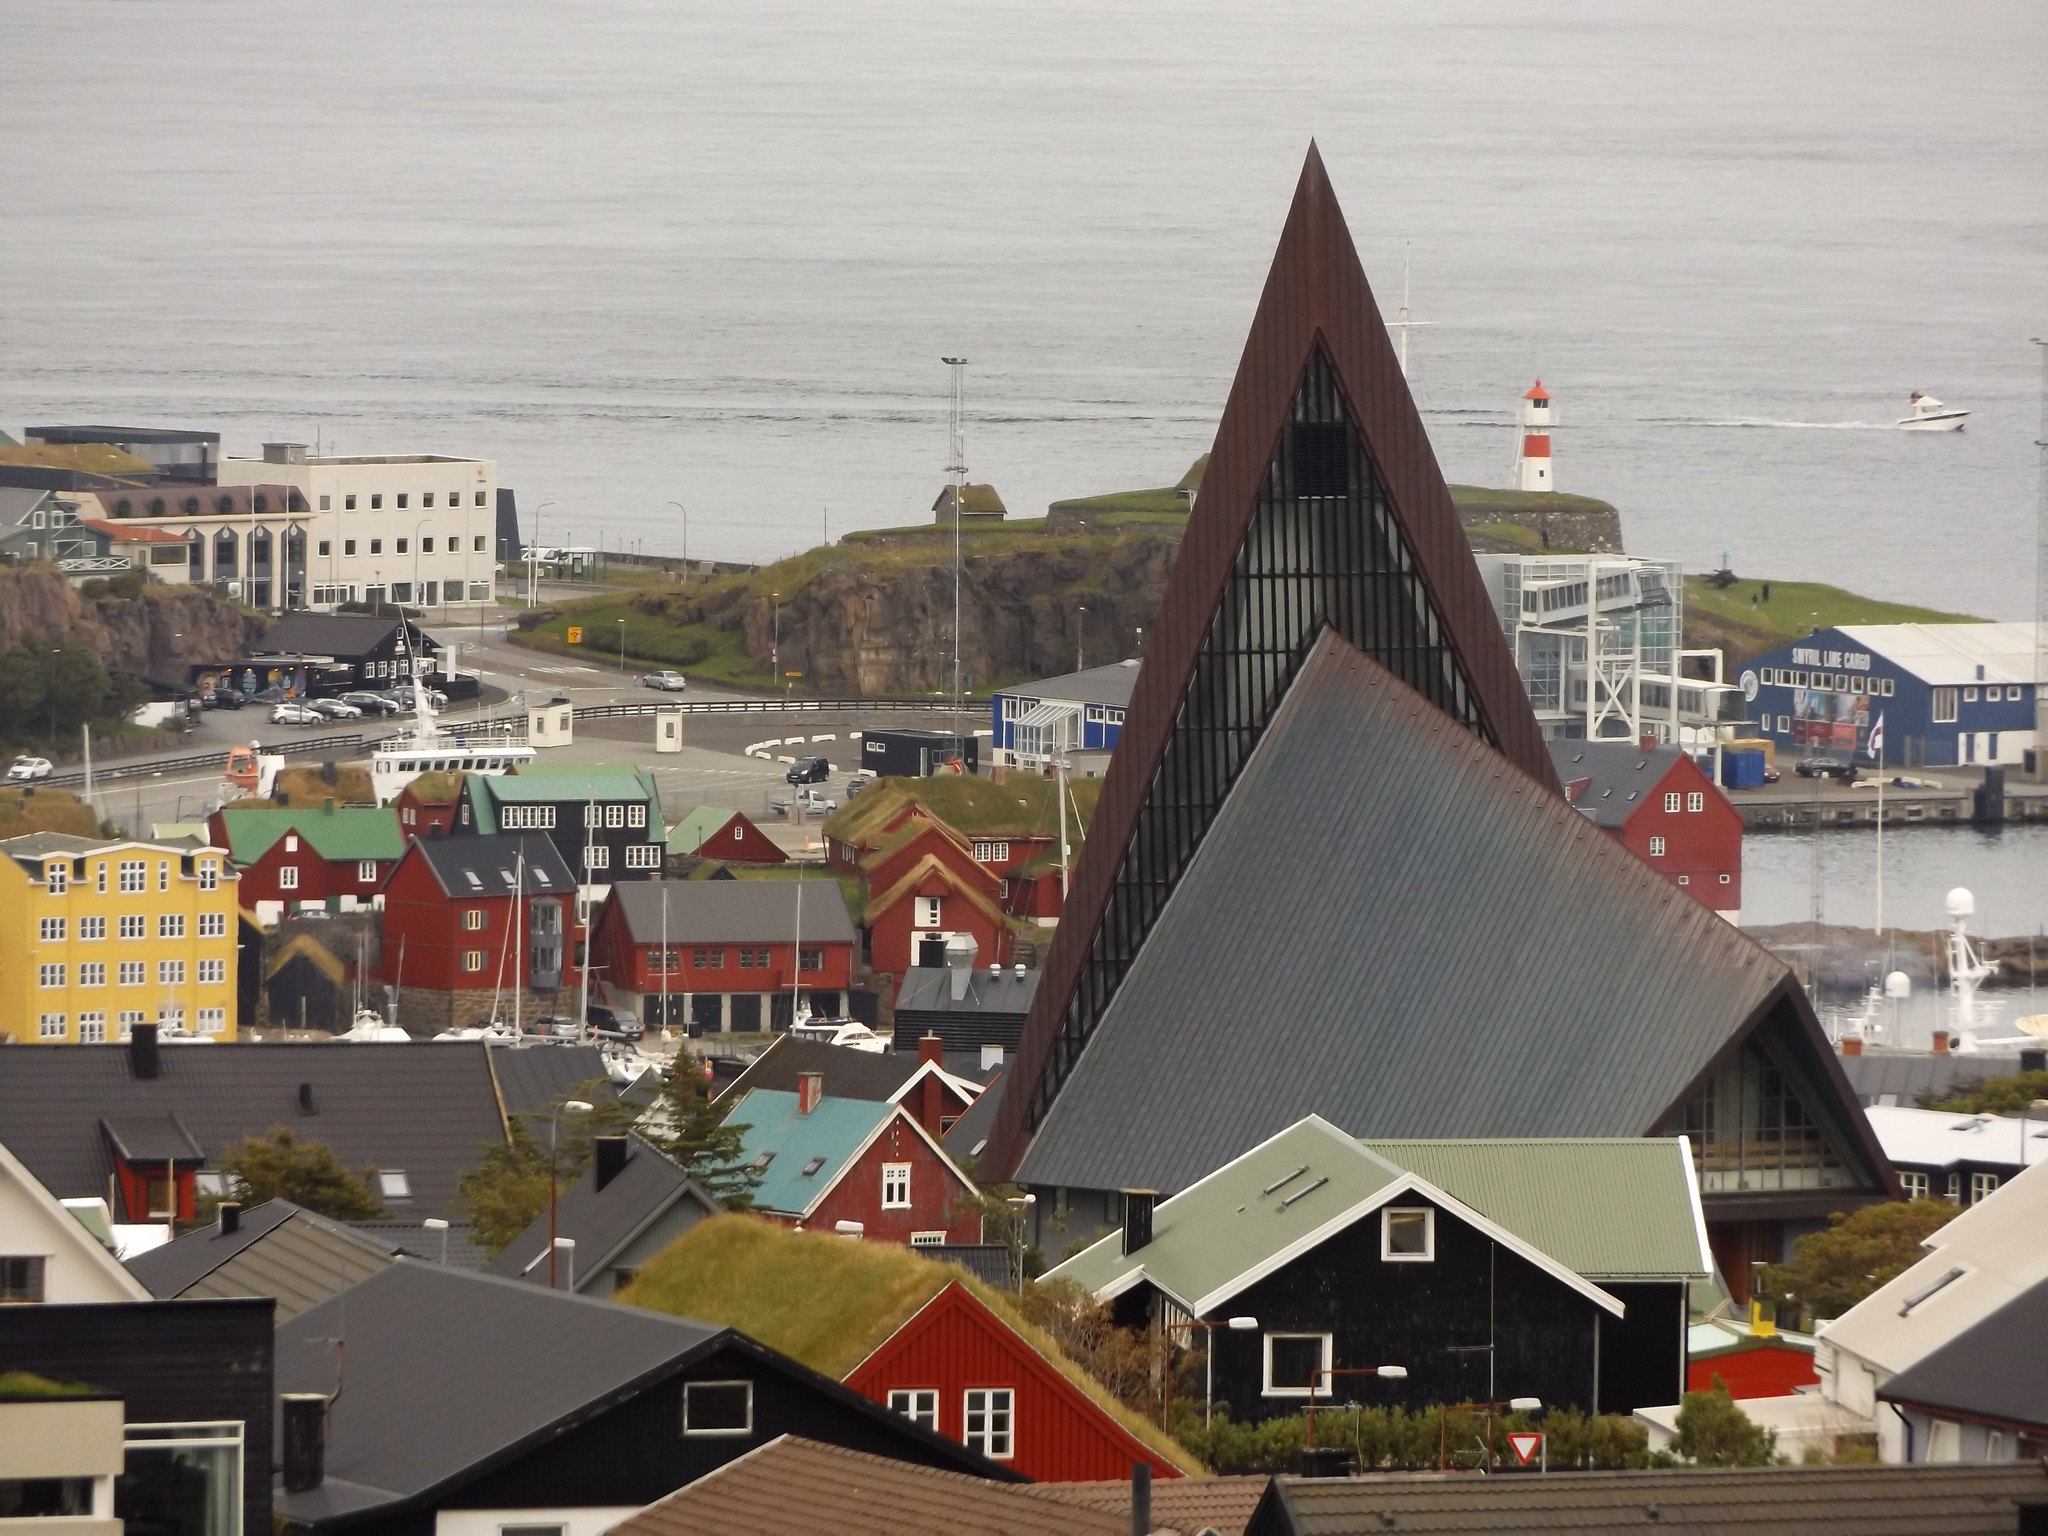 Vesturkirkjan, Tórshavn, Faroe Islands, 17 July 2018